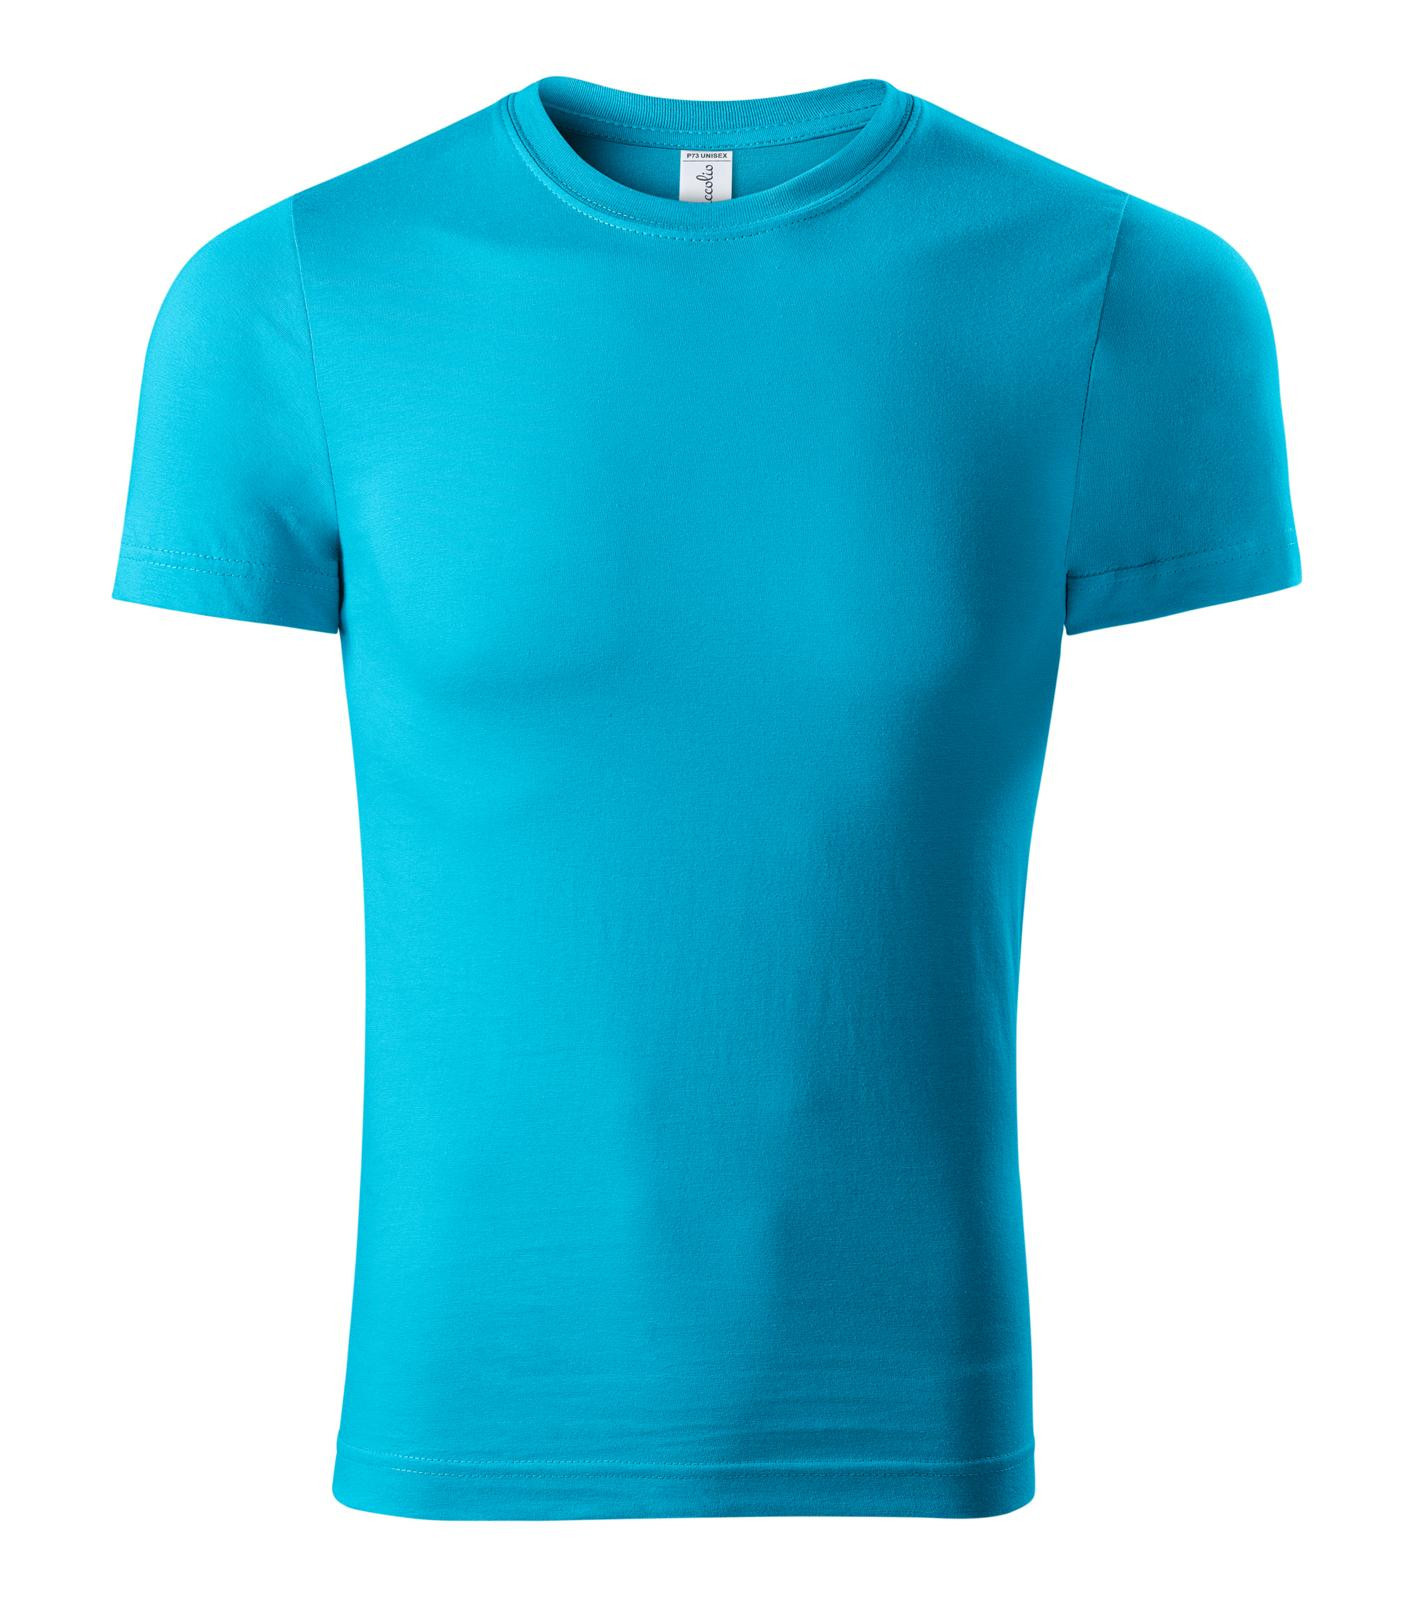 Unisex tričko Piccolio Paint P73 - veľkosť: XXL, farba: tyrkysová